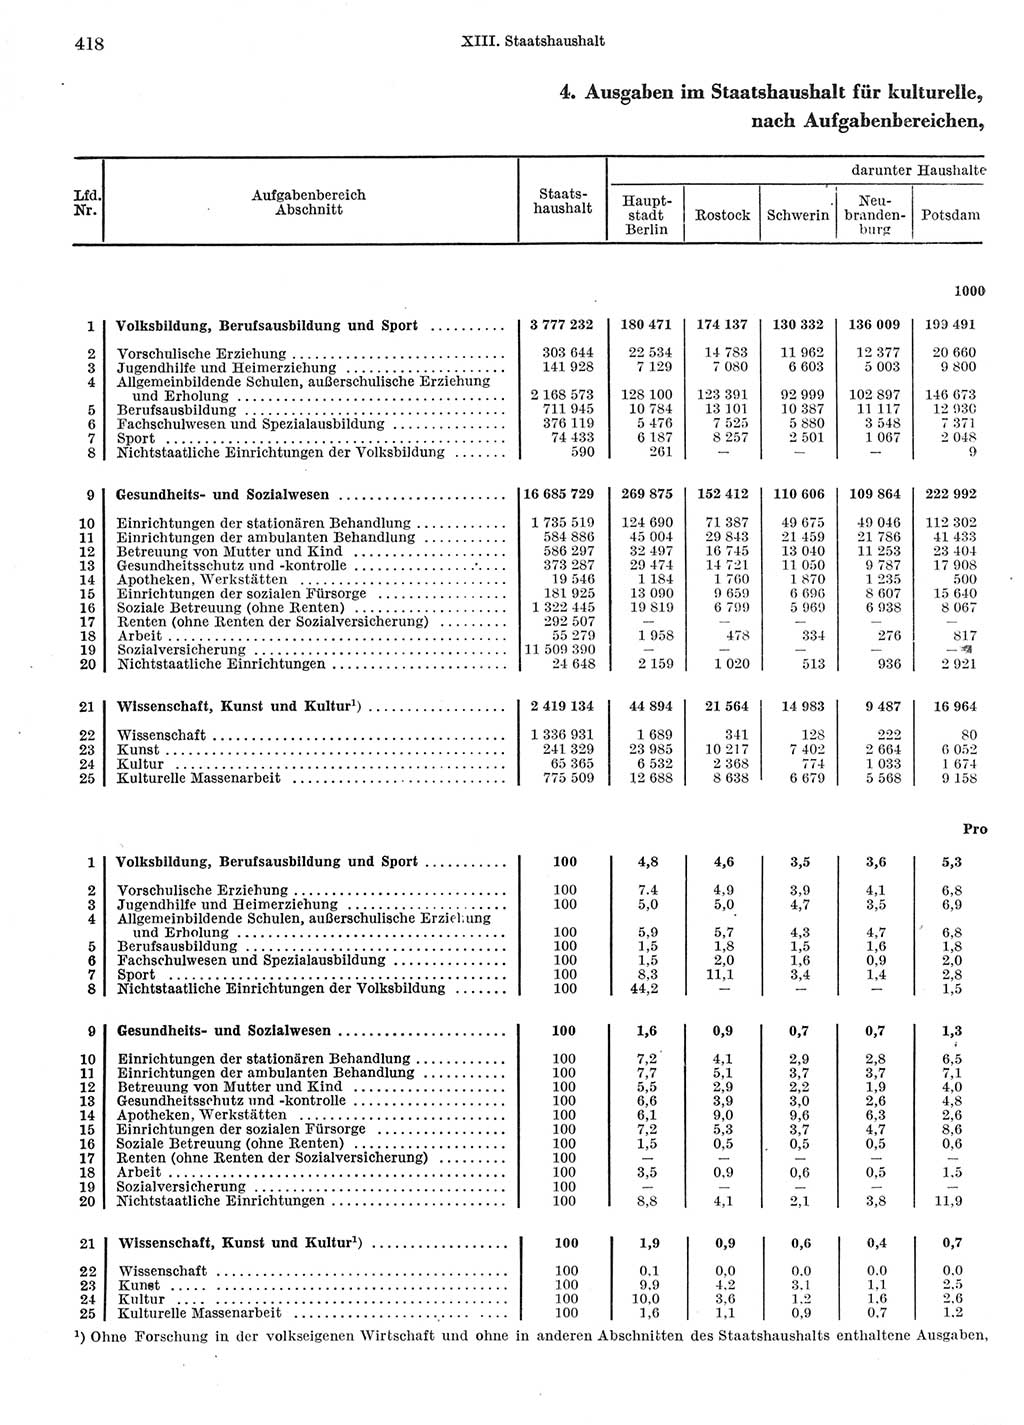 Statistisches Jahrbuch der Deutschen Demokratischen Republik (DDR) 1967, Seite 418 (Stat. Jb. DDR 1967, S. 418)